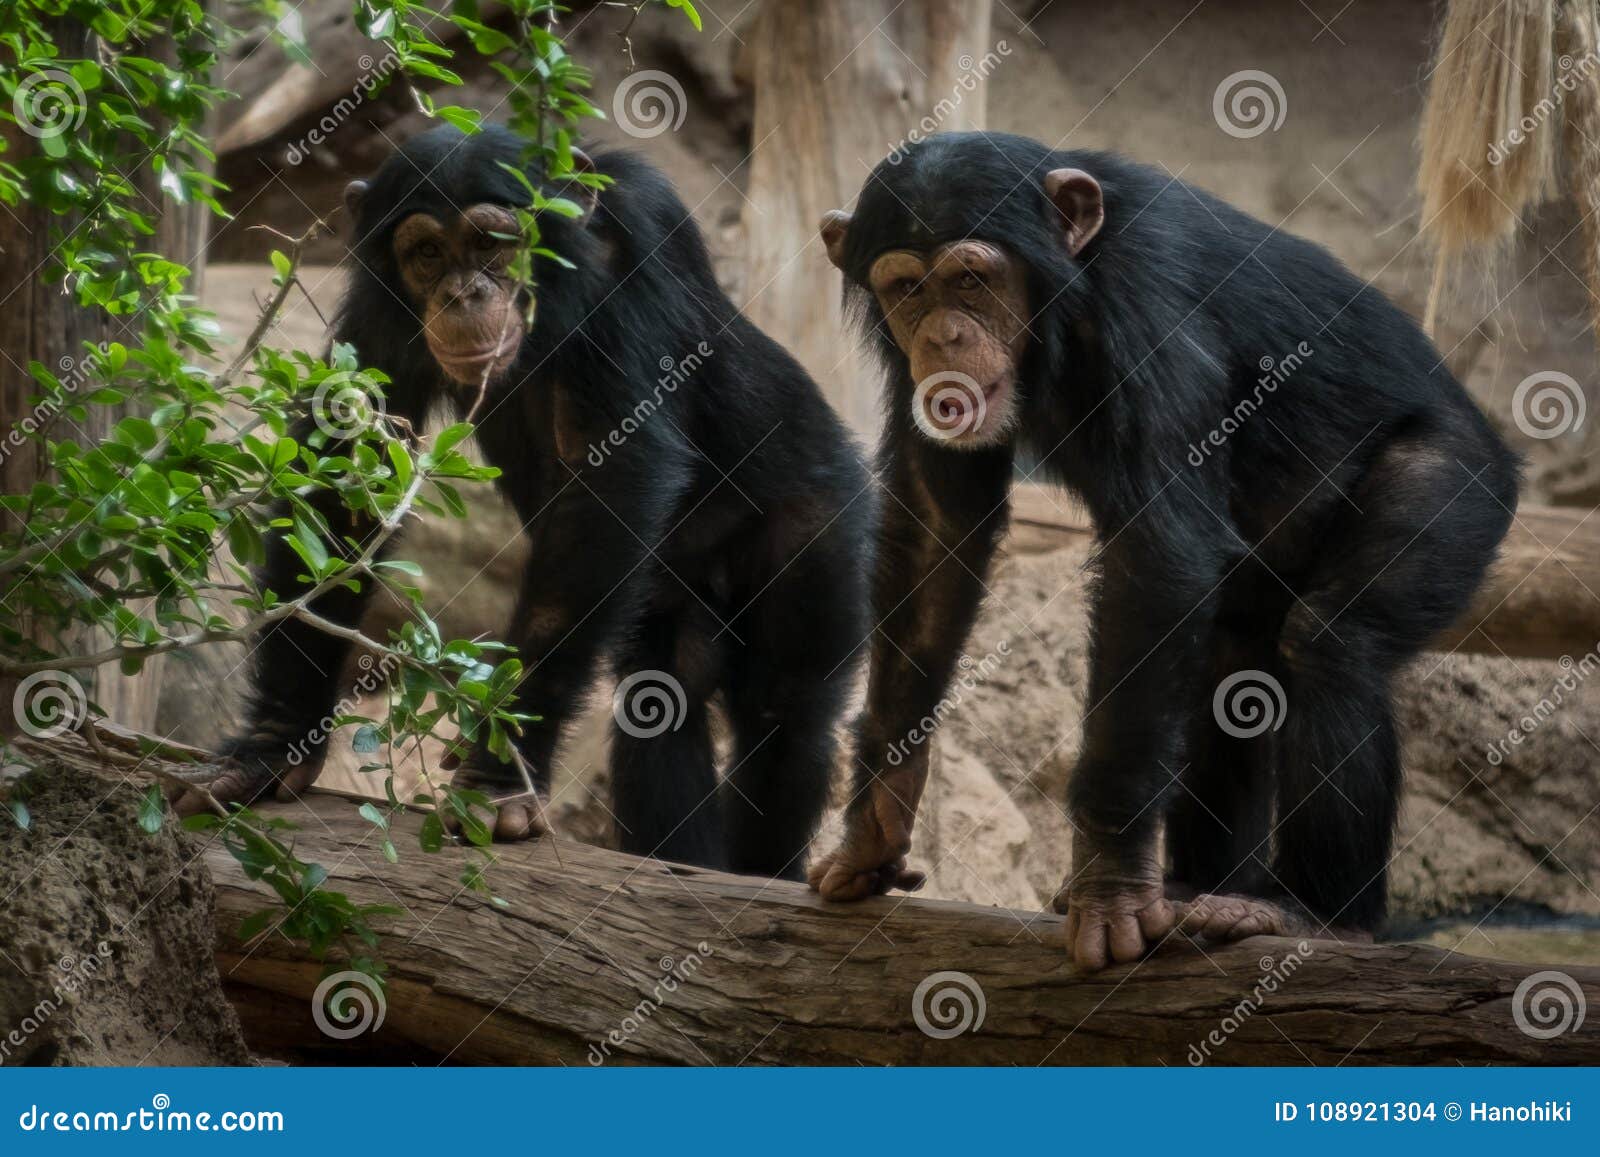 two monkeys in zoo - two chimpanse monkeys outdoor